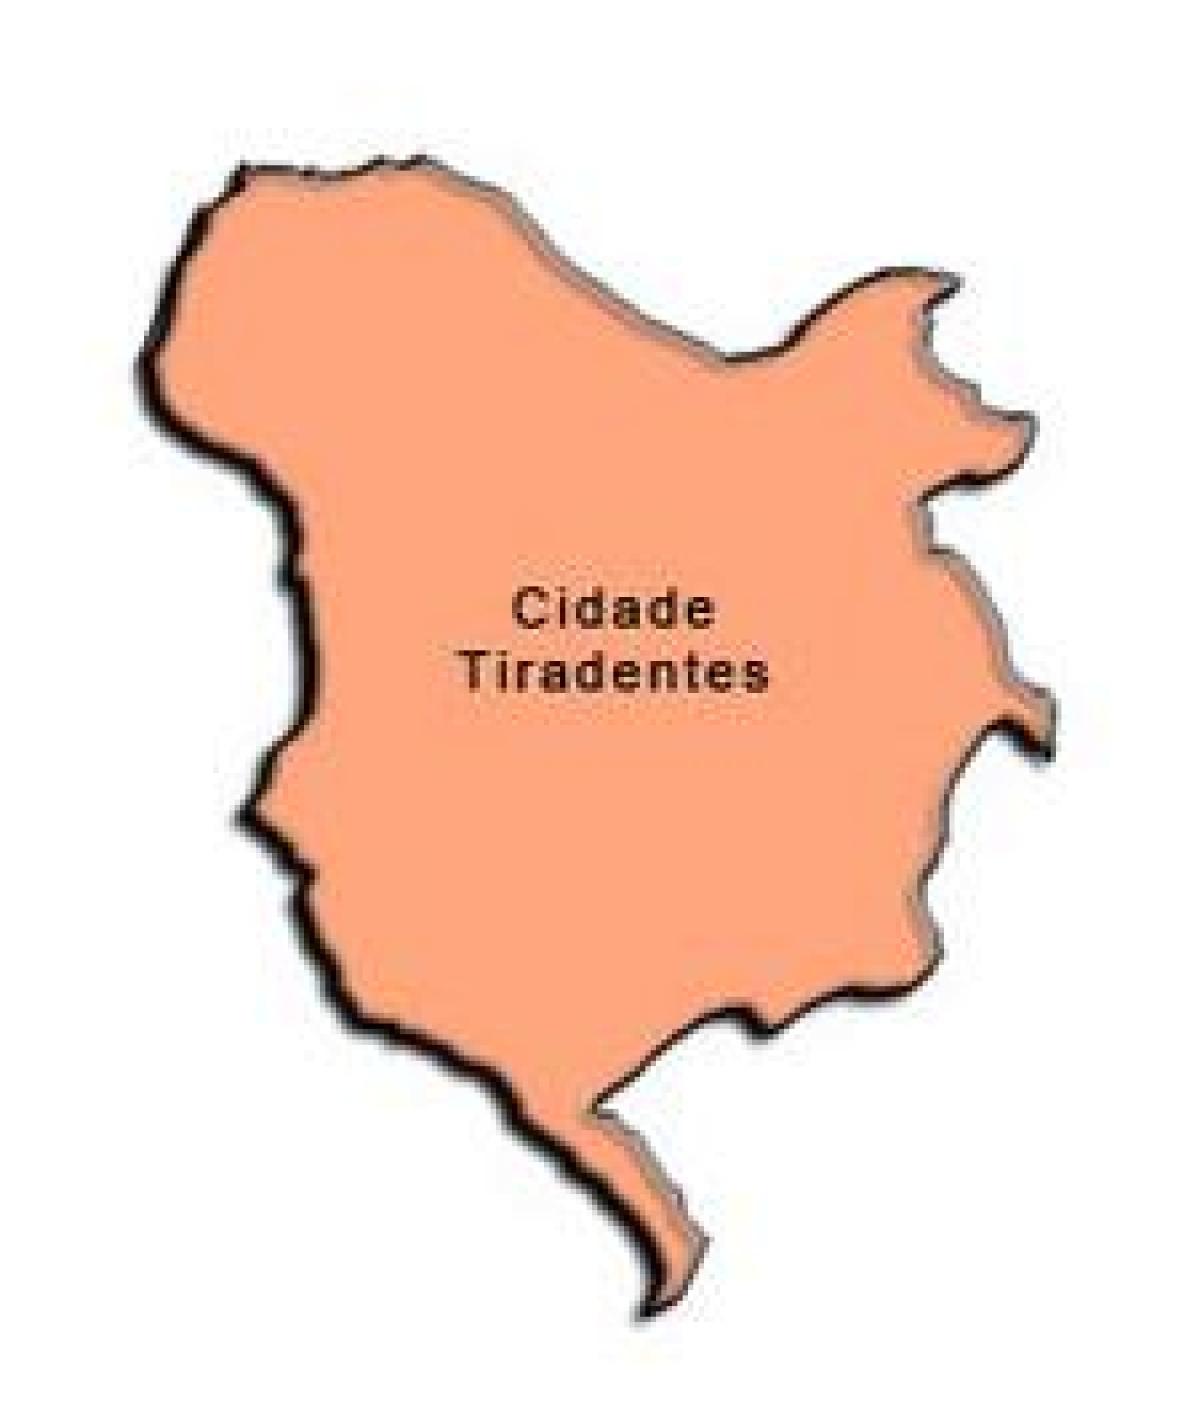 מפה של Cidade Tiradentes תת-פריפקטורה